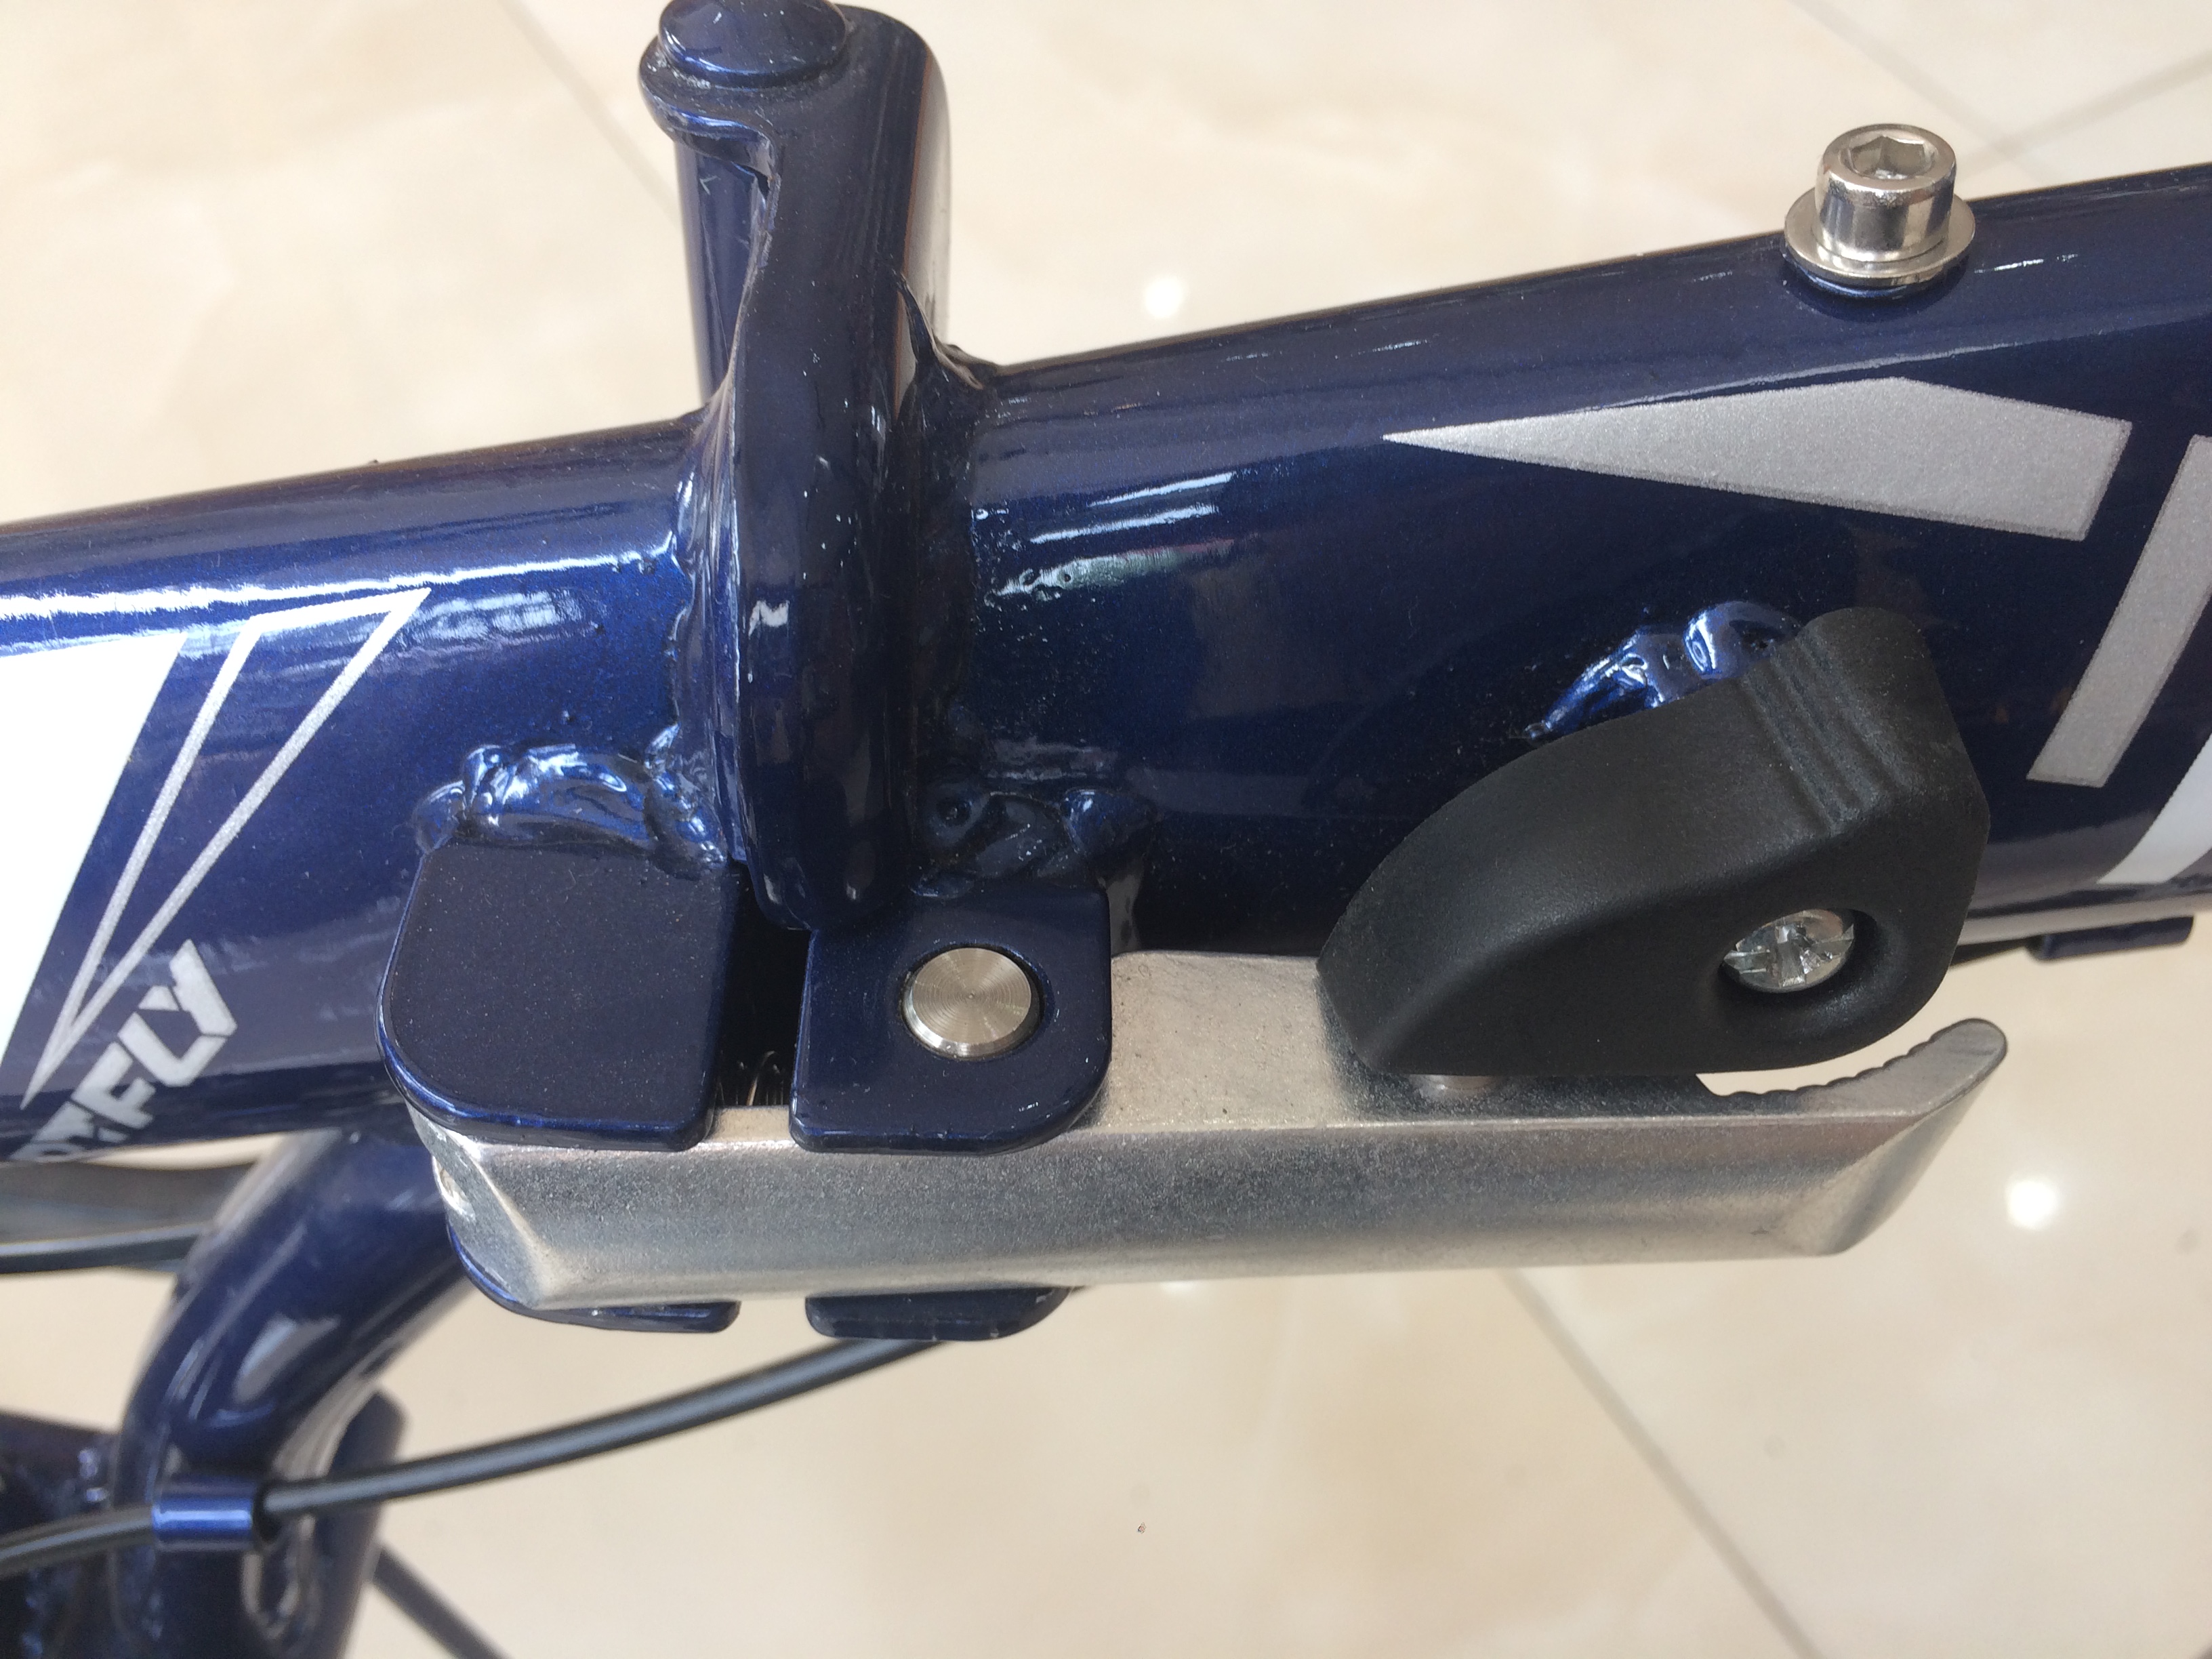 Xe đạp gấp Low Carbon GX06V 2019 Blue White